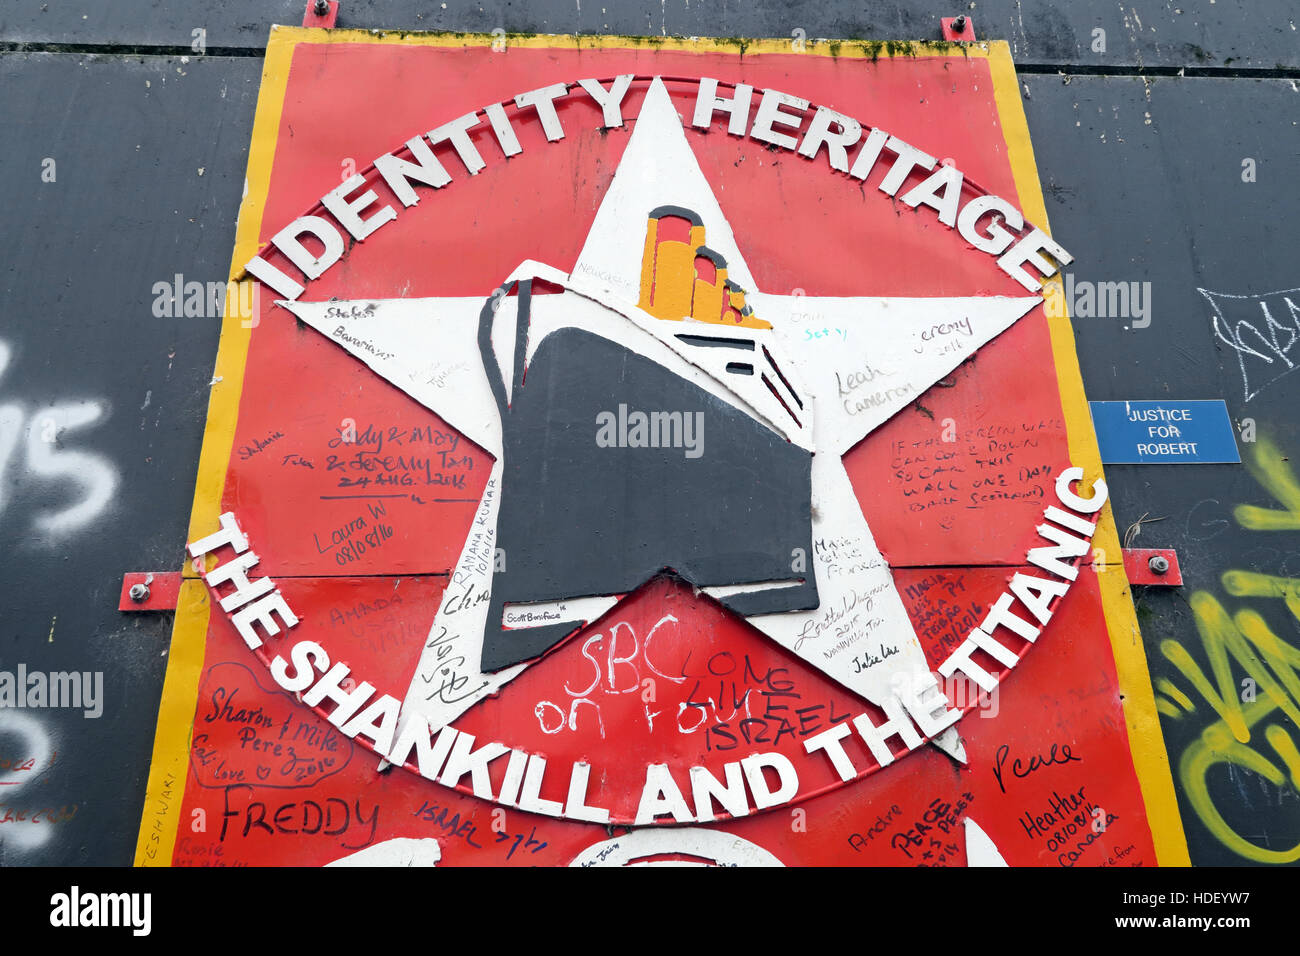 Patrimoine,Identité,Mur,la paix internationale Cupar Way,l'Ouest de Belfast, Irlande du Nord, Royaume-Uni Banque D'Images